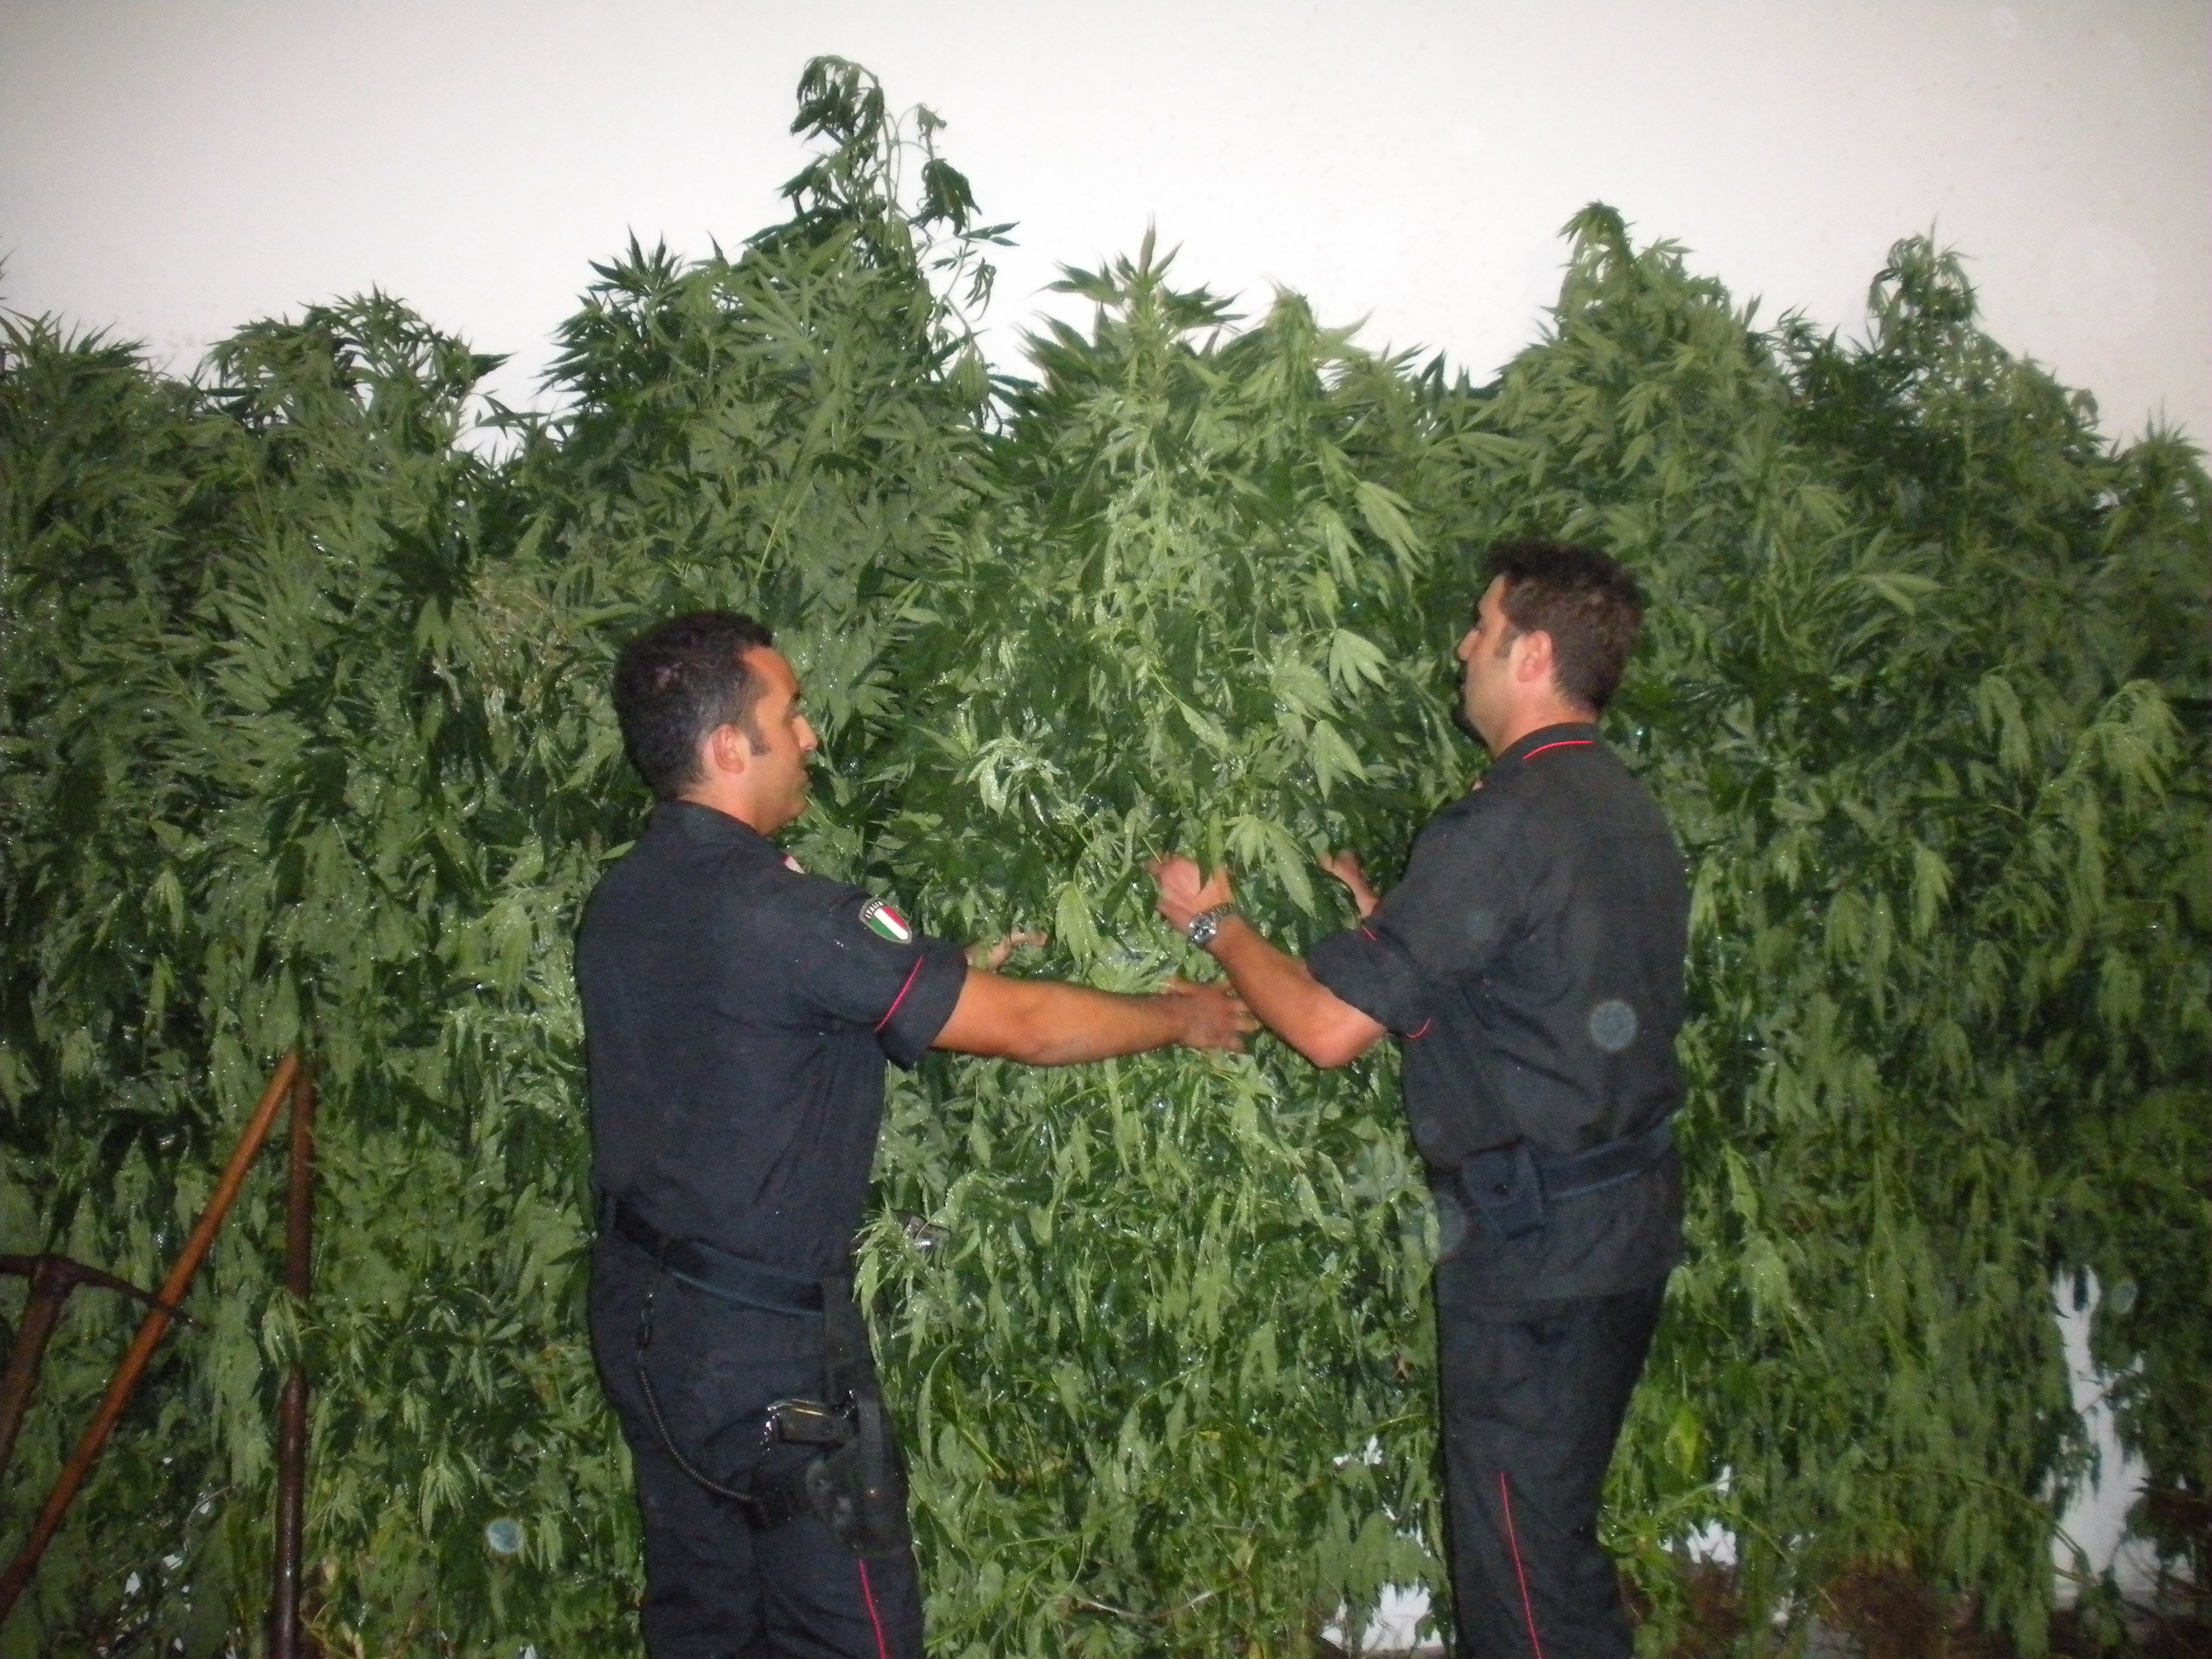 Illorai. Carabinieri scovano grande piantagione di cannabis attraverso l'osservazione dall'alto effettuata con un elicottero